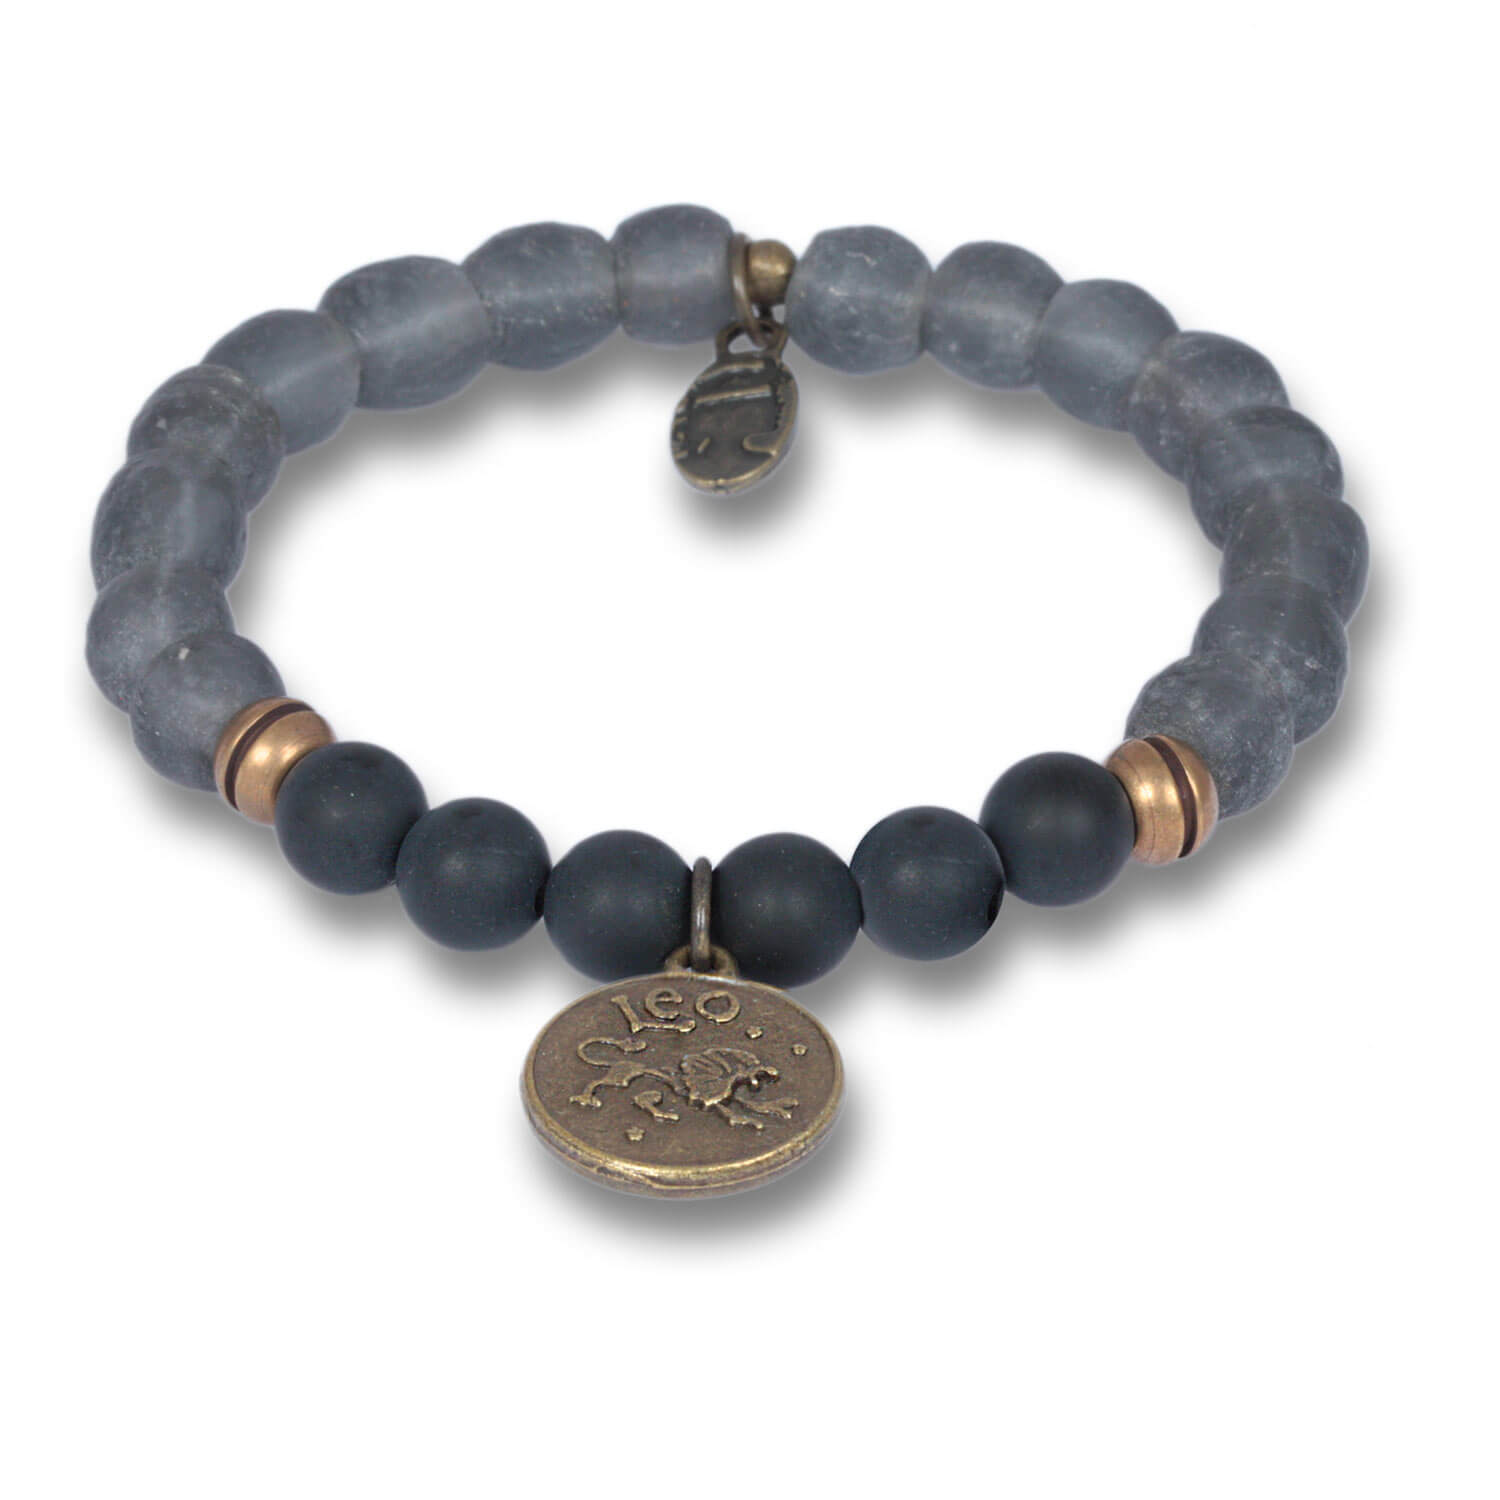 L-we - Signs of Zodiac Zodiac Bracelet made of Onyx &amp; Krobo Beads